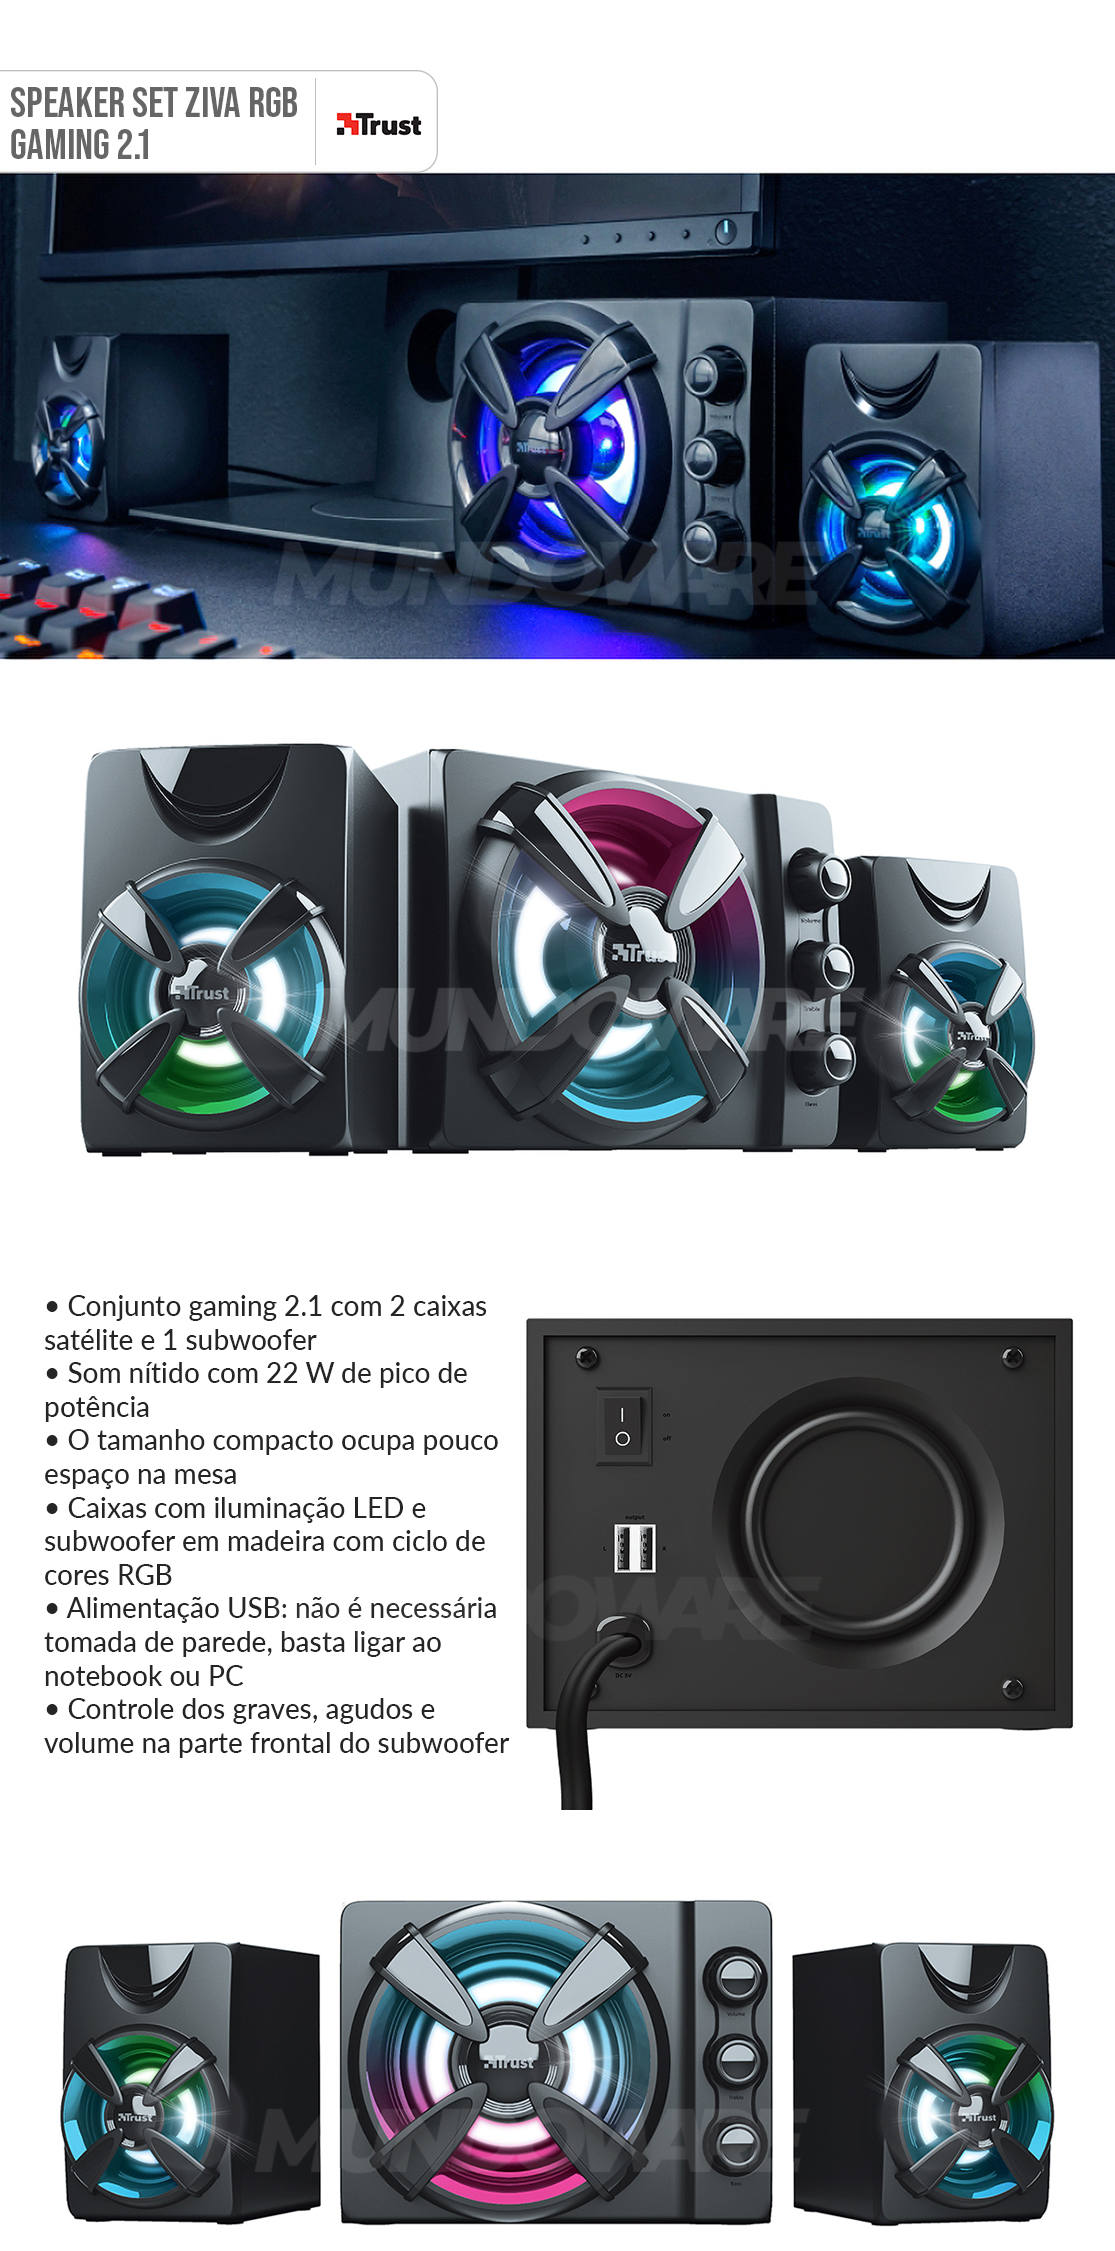 Caixa de Som 2.1 Gamer com Subwoofer em Madeira 11W RMS Iluminação RGB USB Trust Ziva